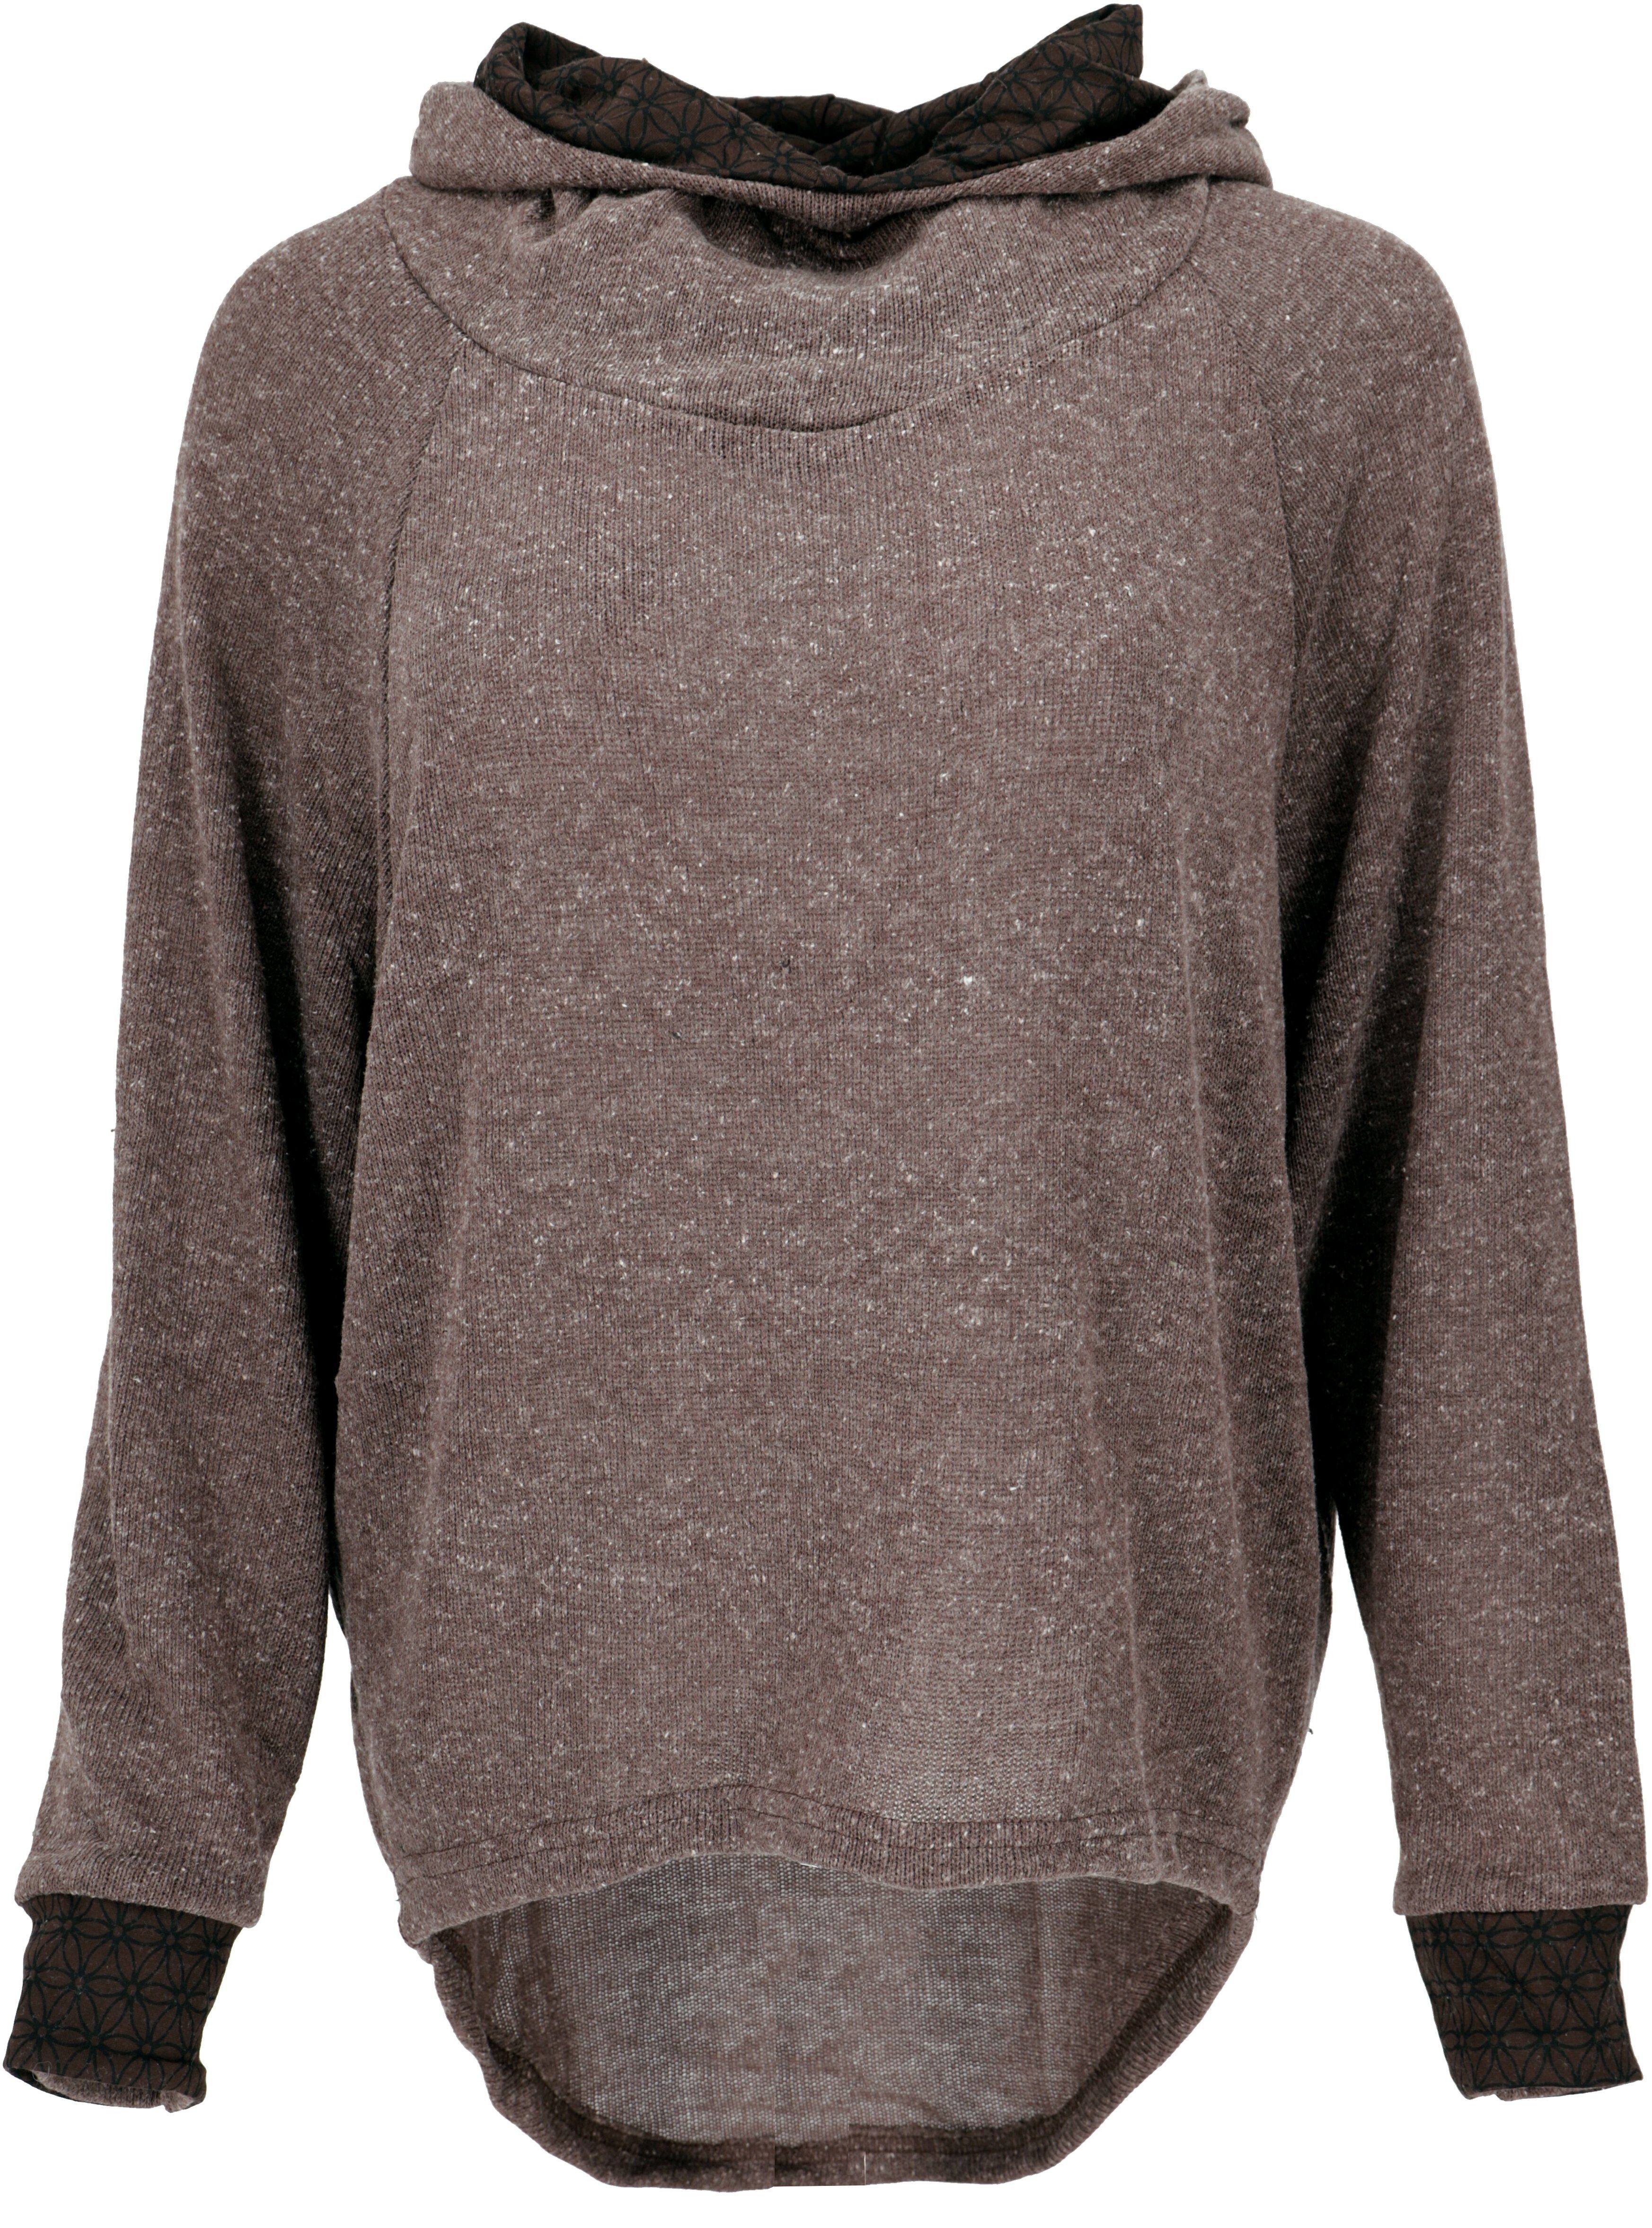 Pullover, Guru-Shop braun Hoody, -.. Bekleidung Sweatshirt, alternative Kapuzenpullover Longsleeve